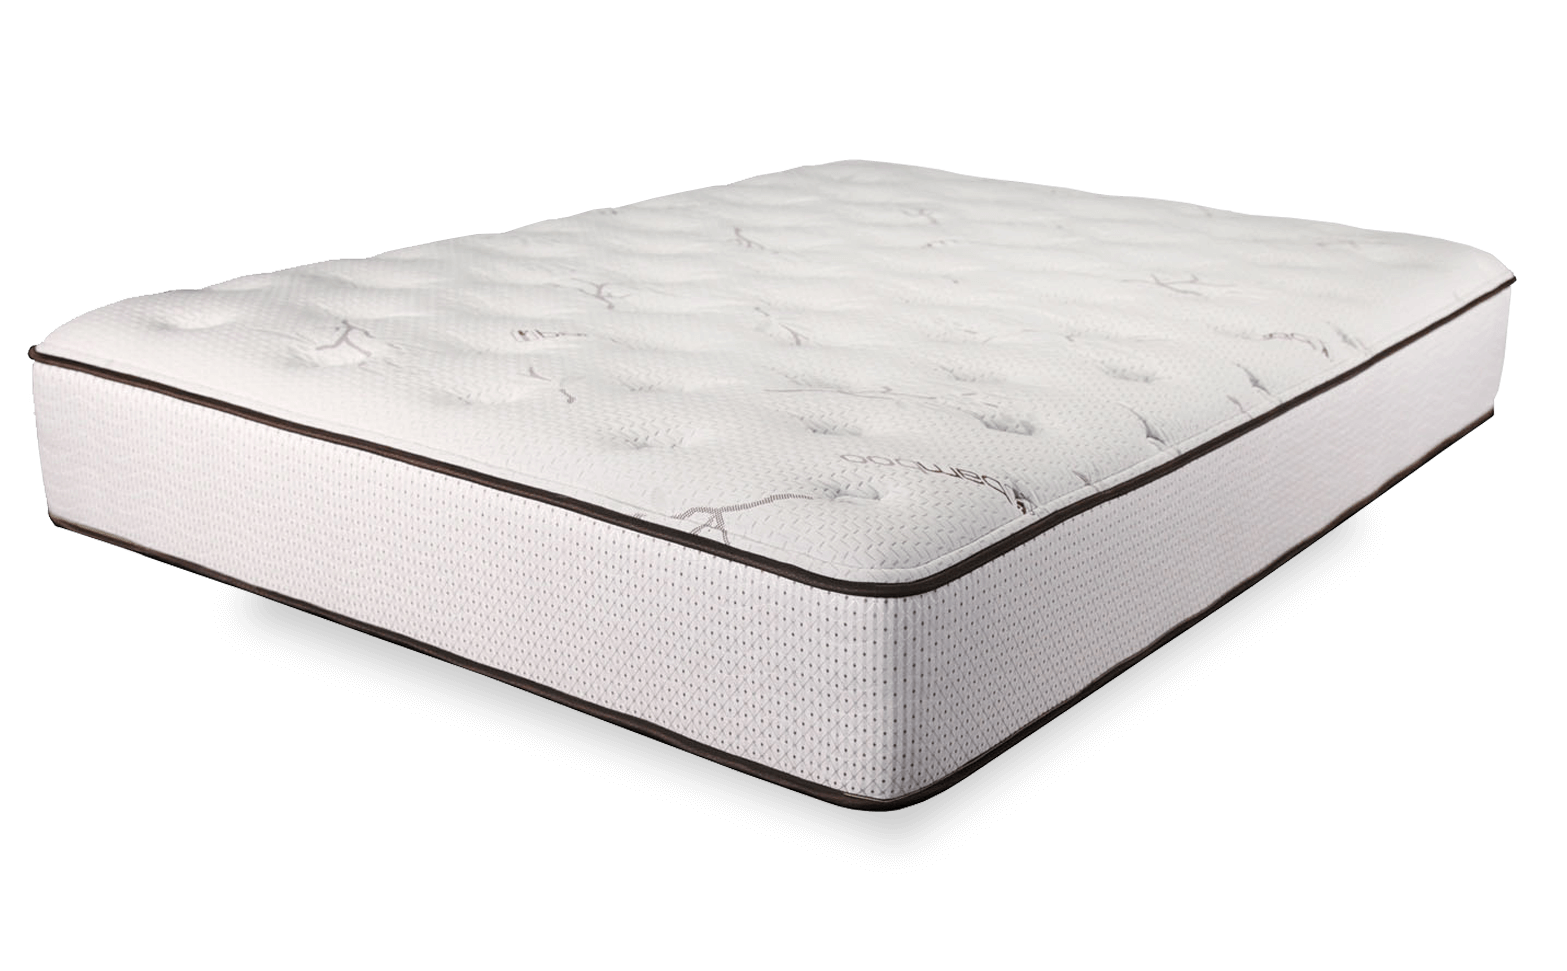 price of rog mattress h30cm